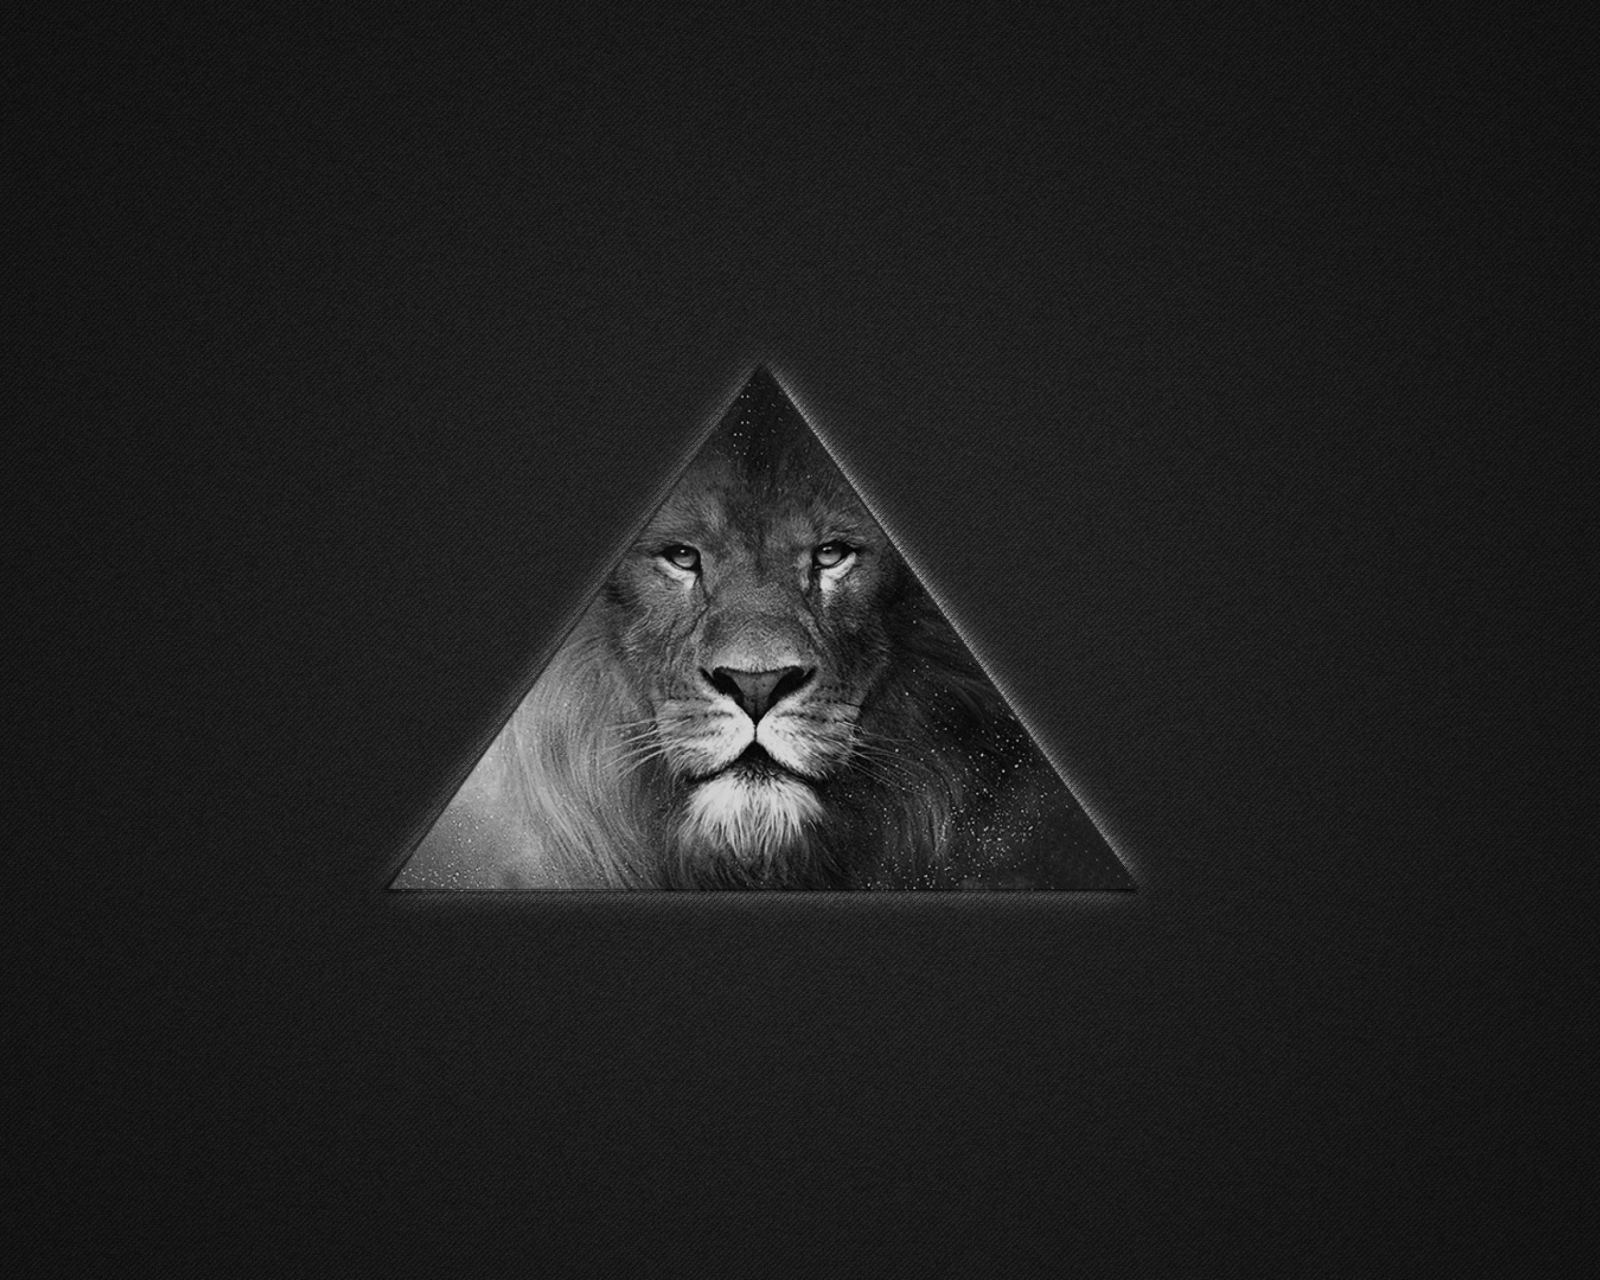 Обои Lion's Black And White Triangle 1600x1280